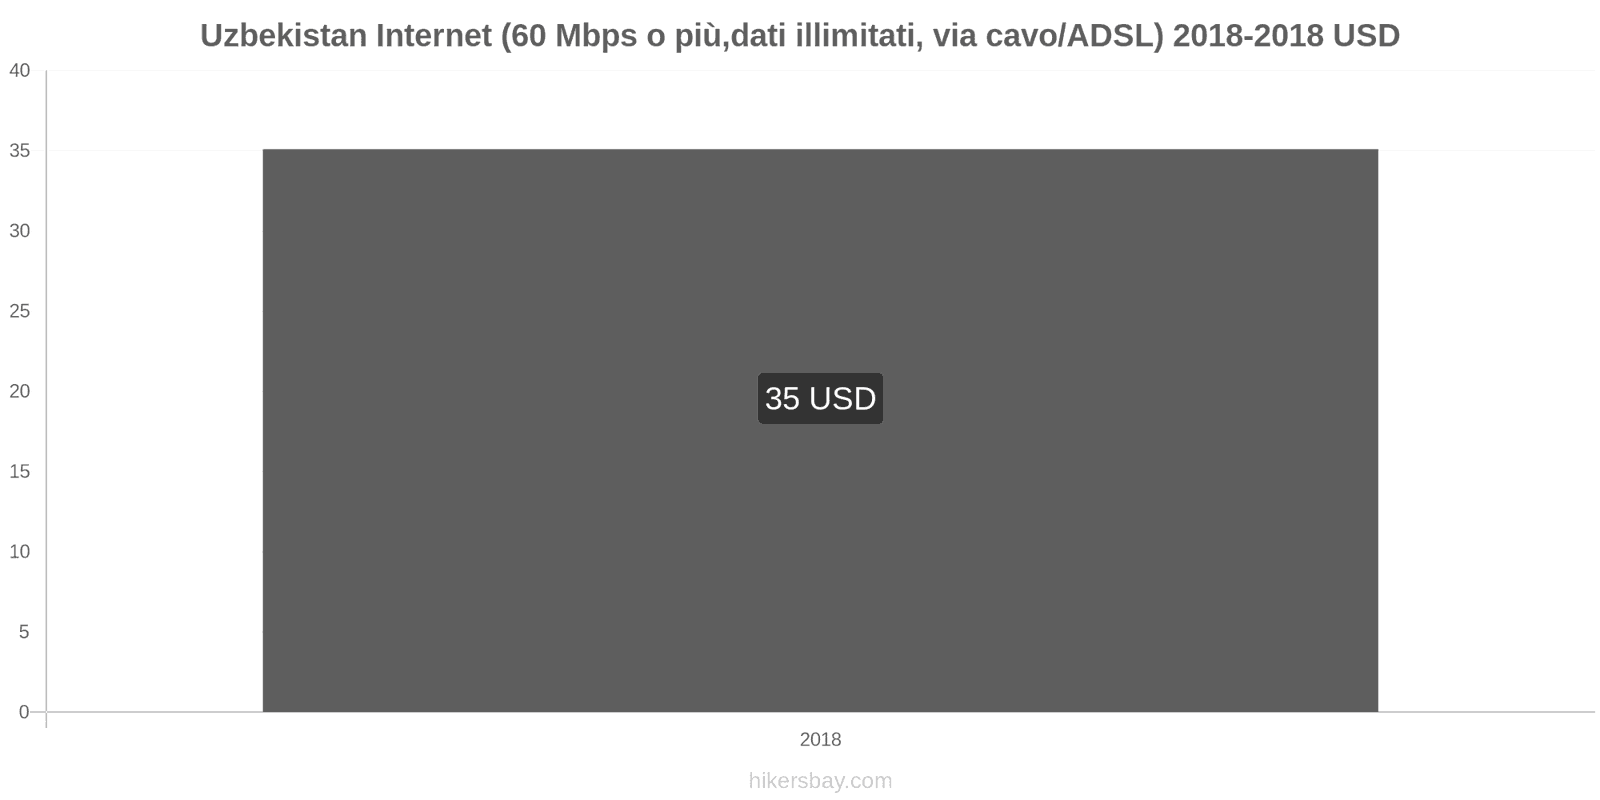 Uzbekistan cambi di prezzo Internet (60 Mbps o più, dati illimitati, cavo/ADSL) hikersbay.com